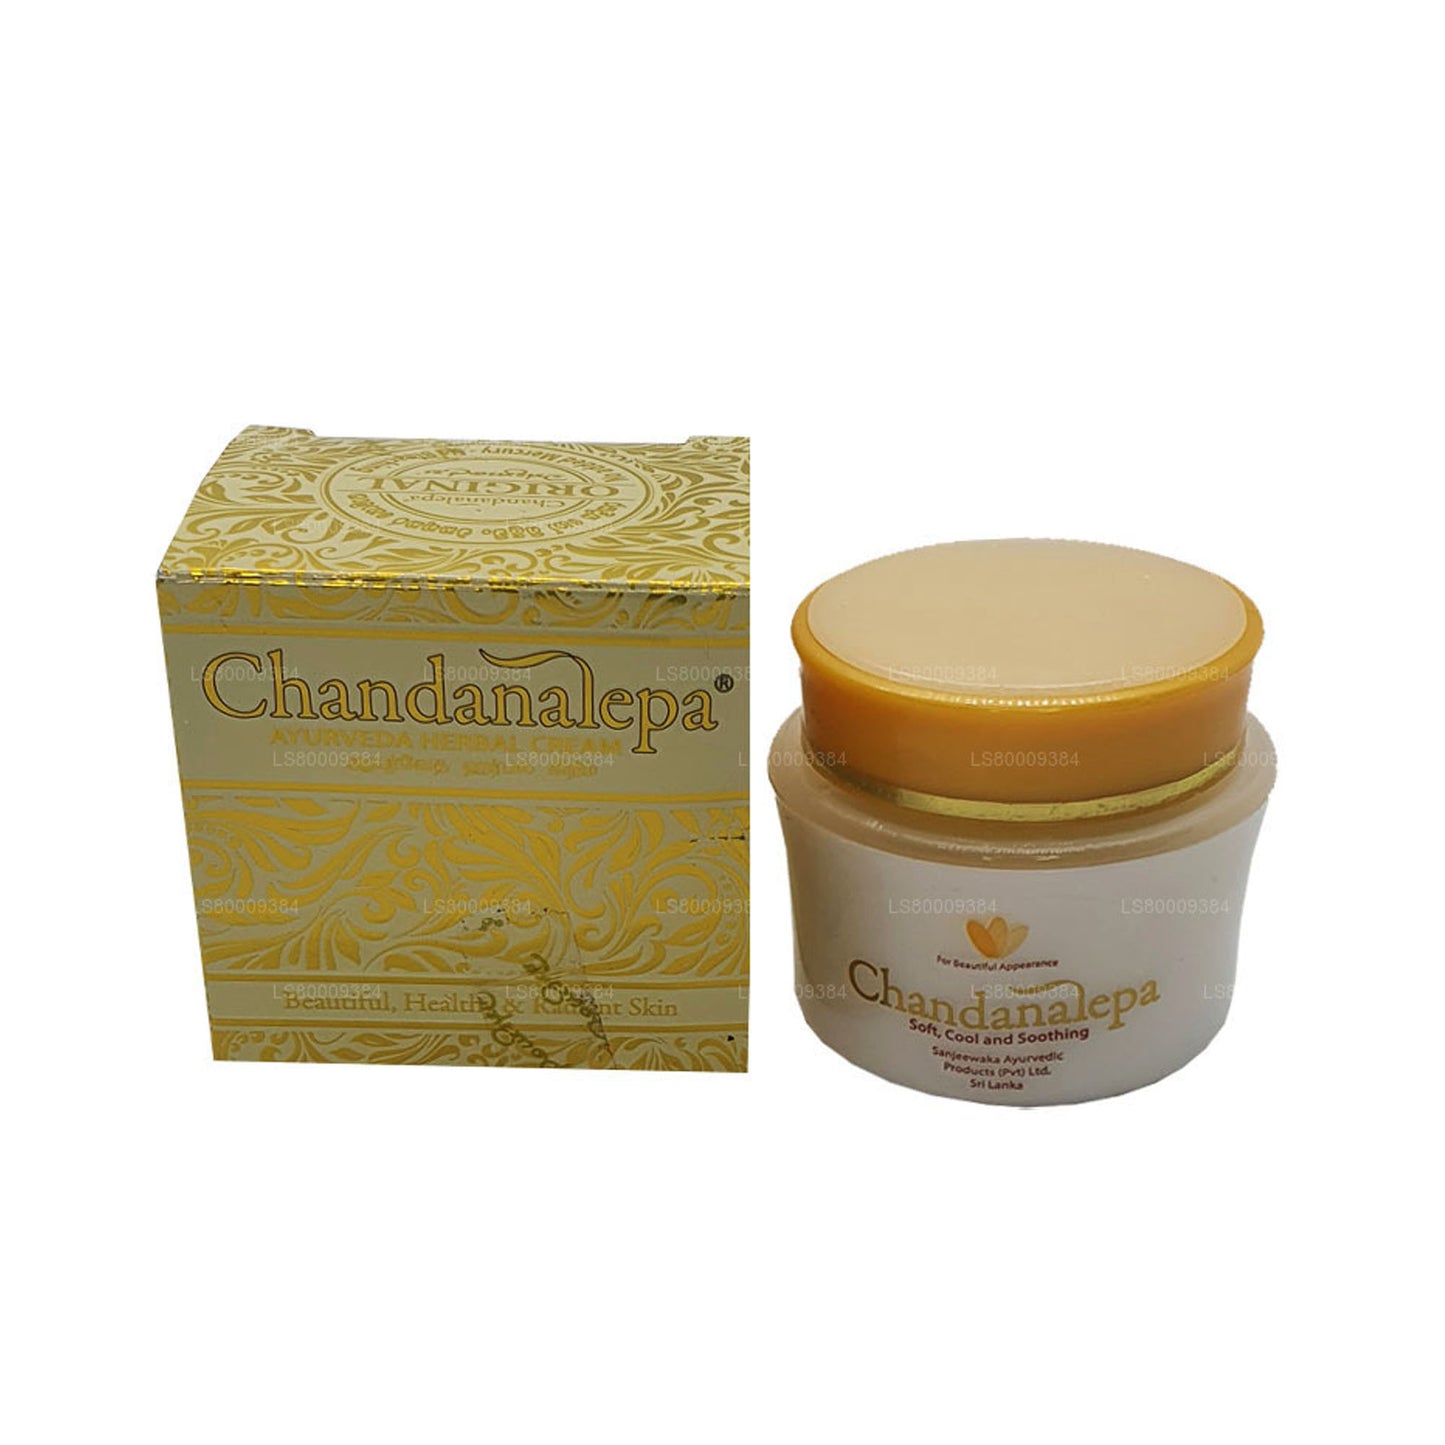 Crema de hierbas Chandanalepa